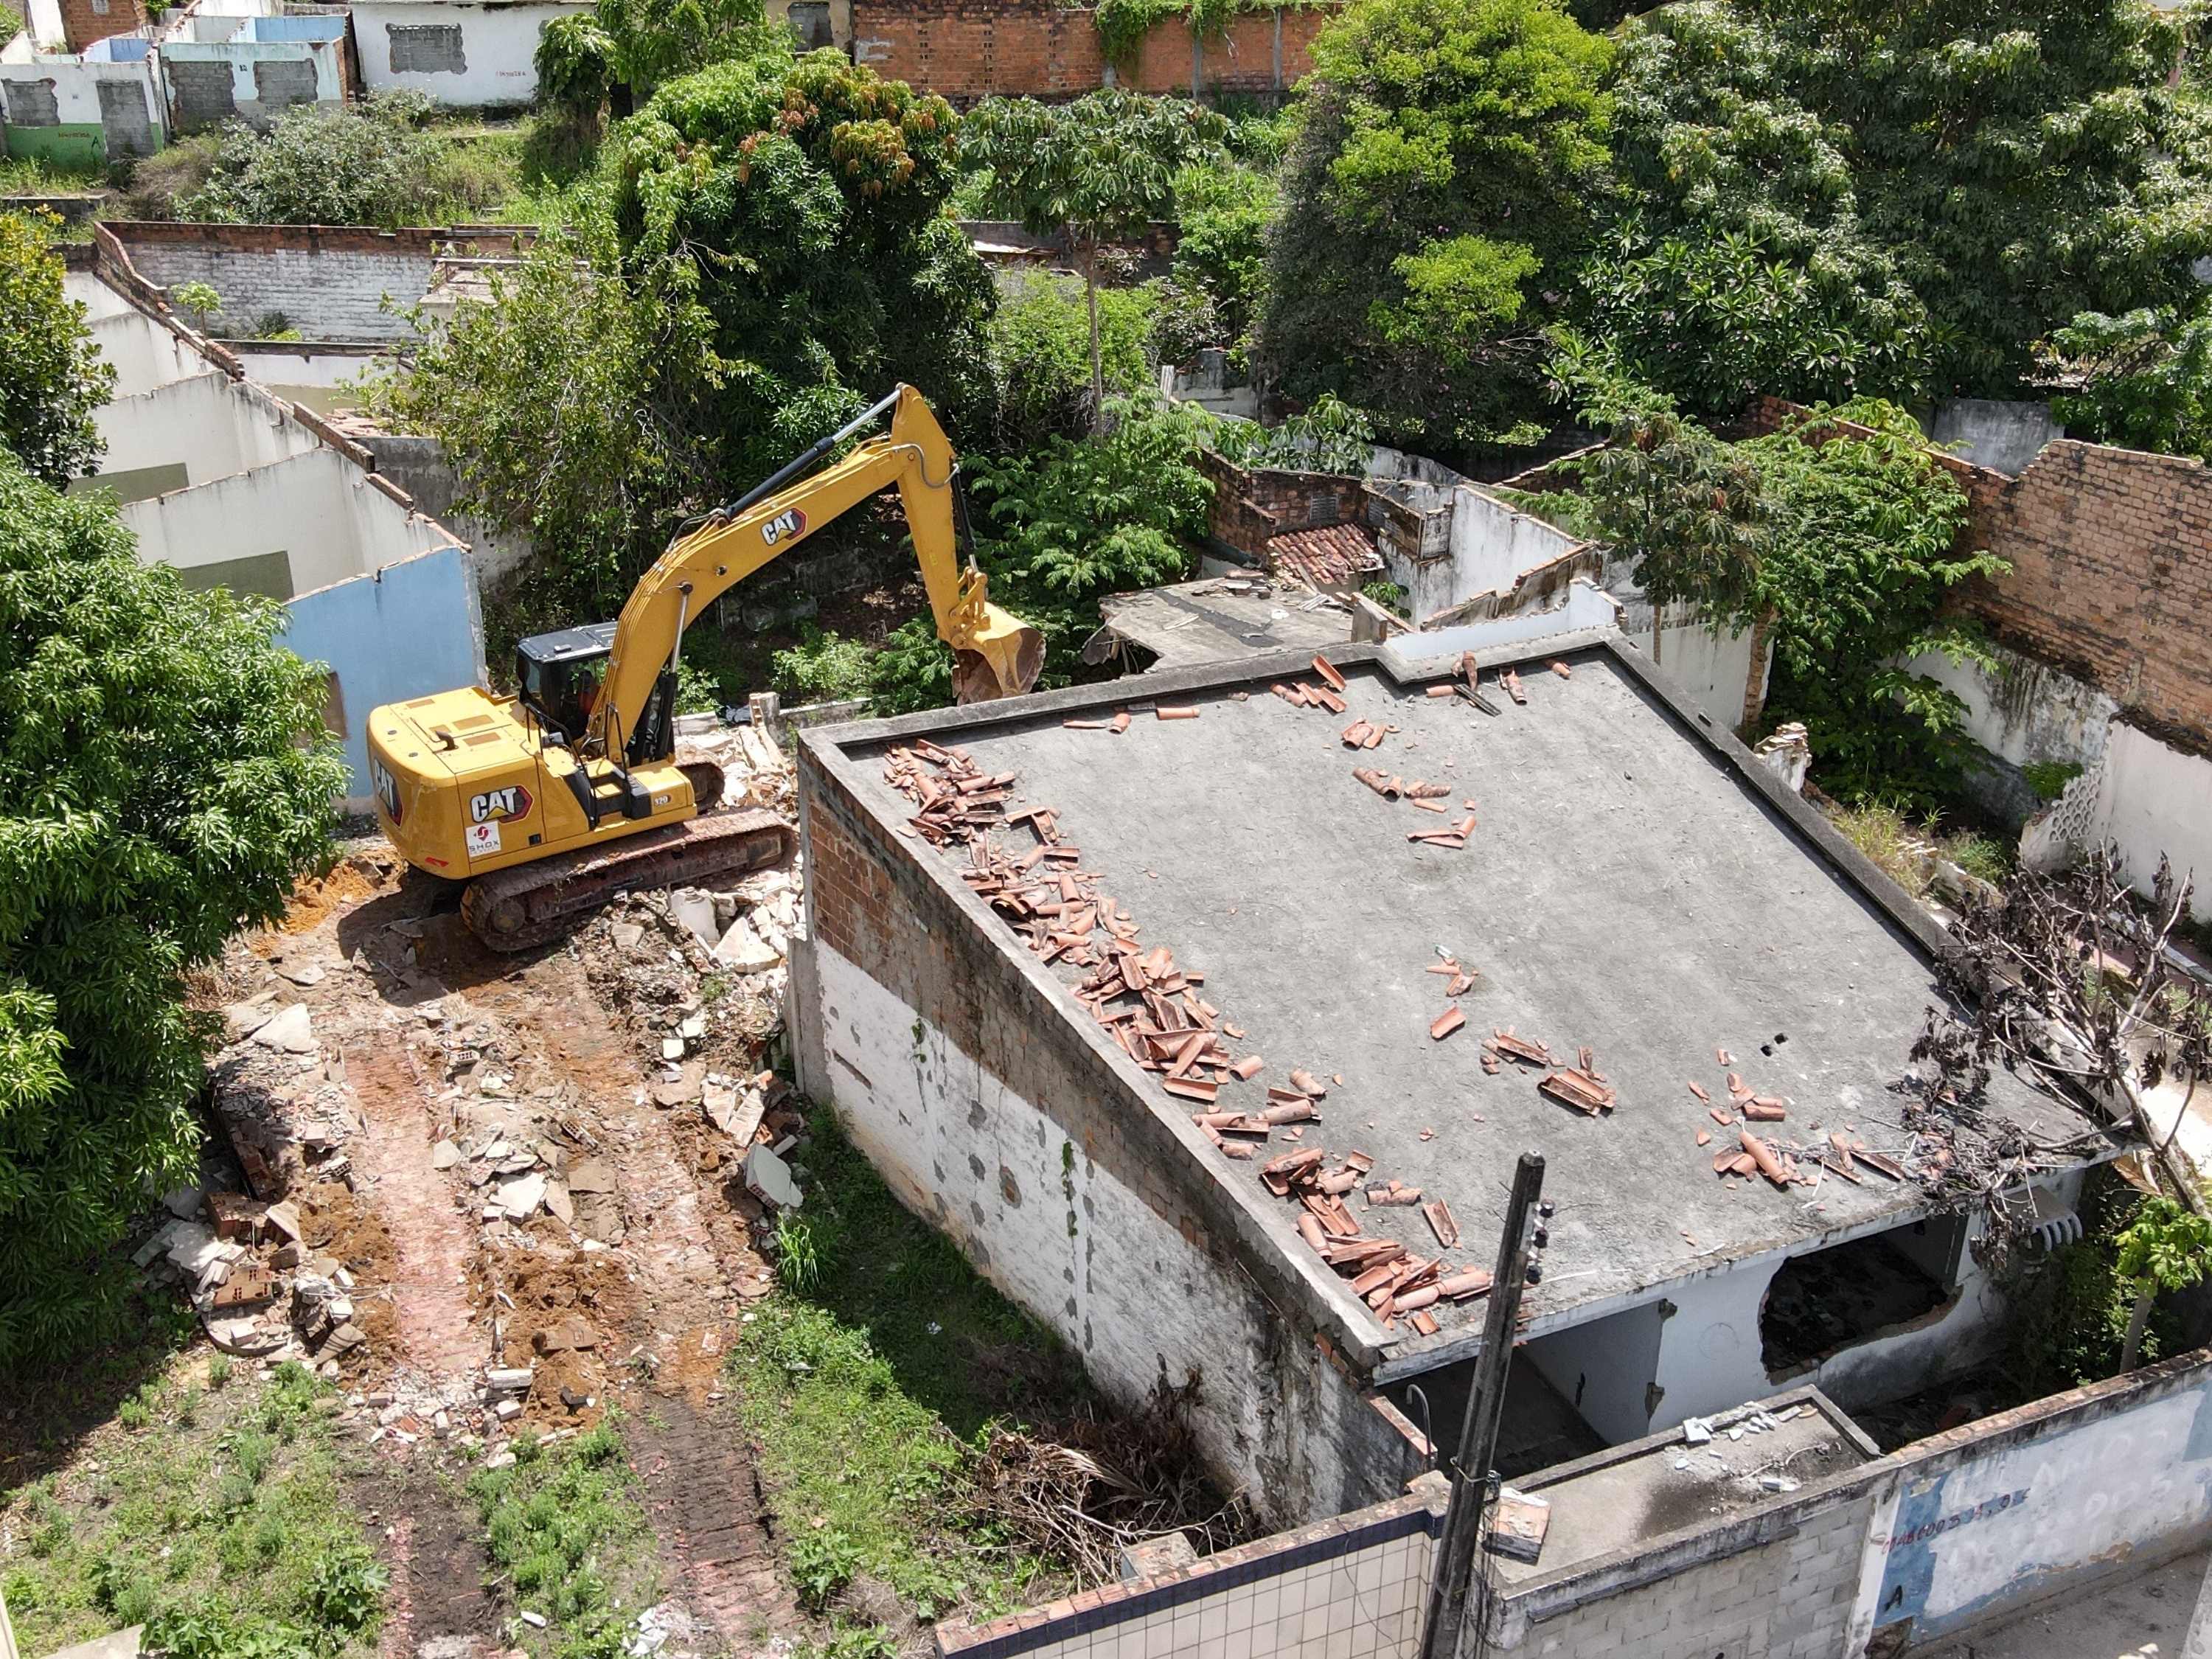 Artigo sobre afundamento dos bairros de Maceió é publicado em